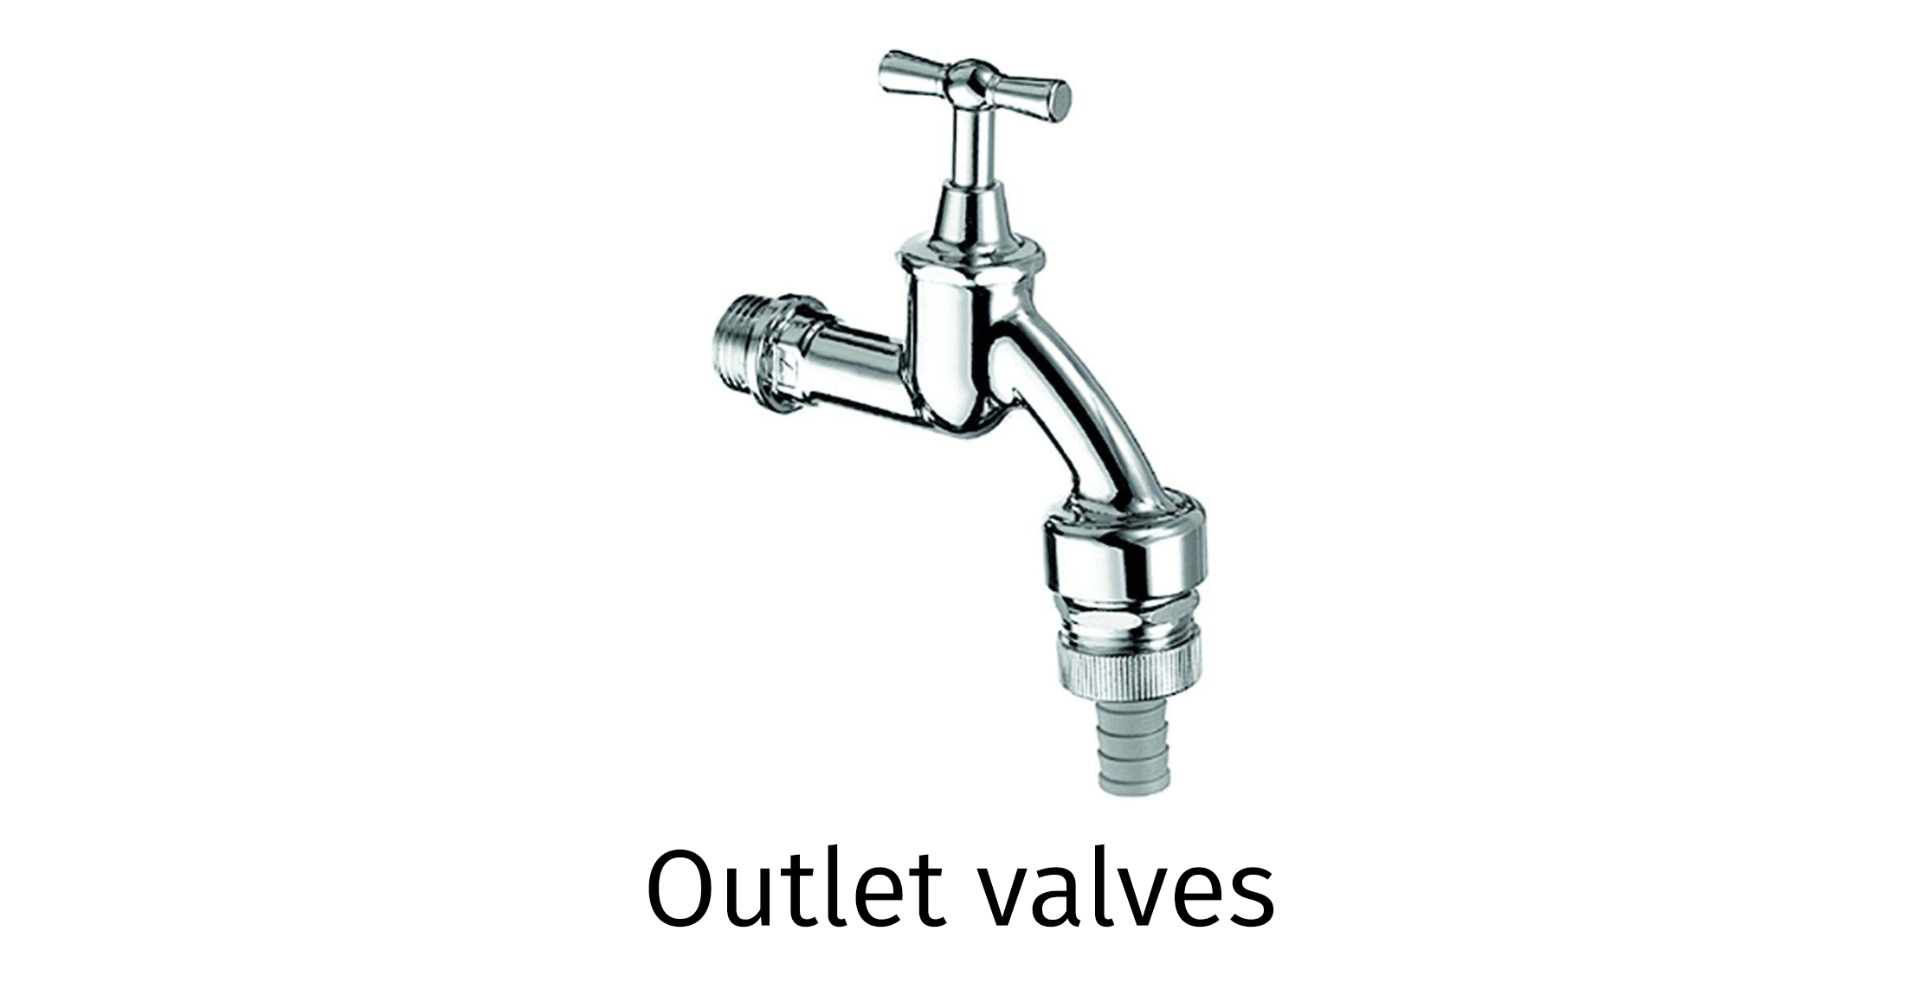 Outlet valves